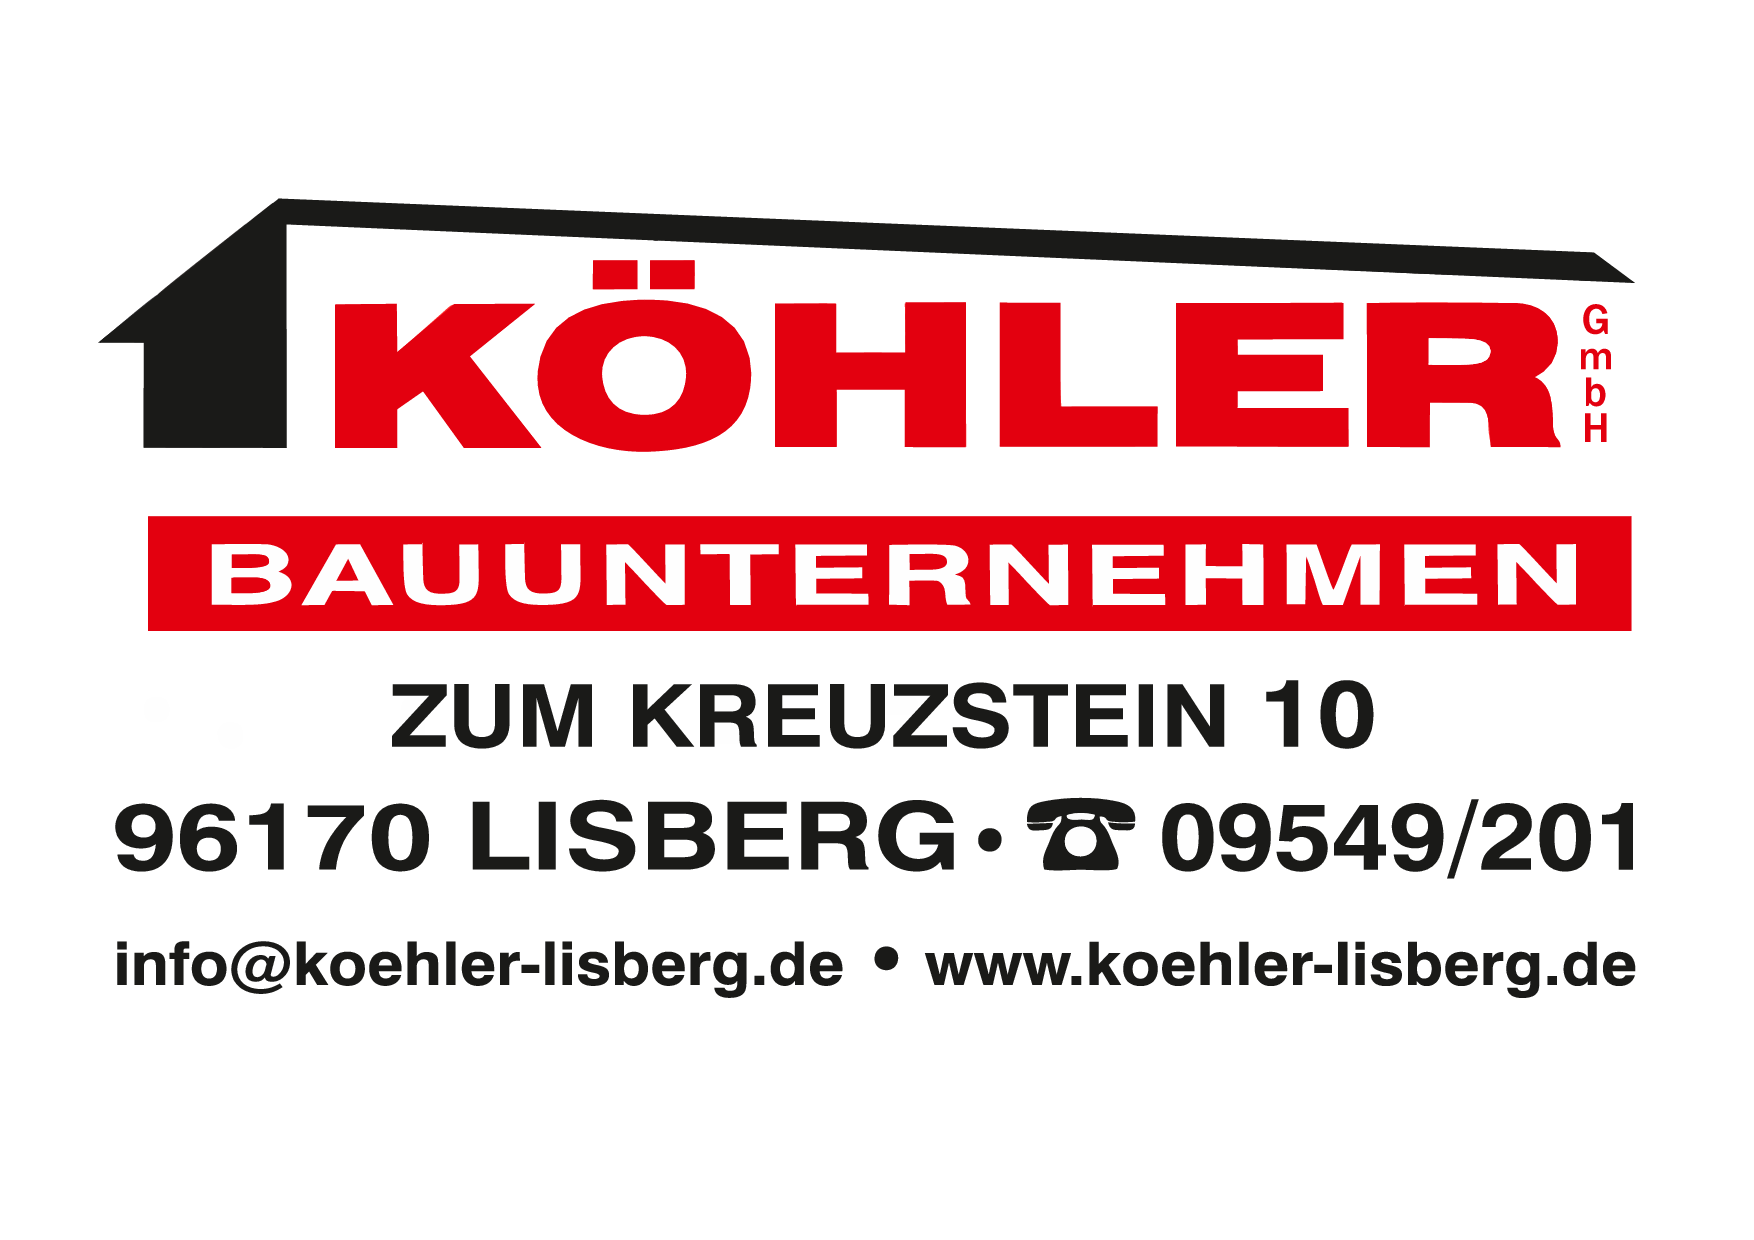 G2/8 Köhler, Bauunternehmen